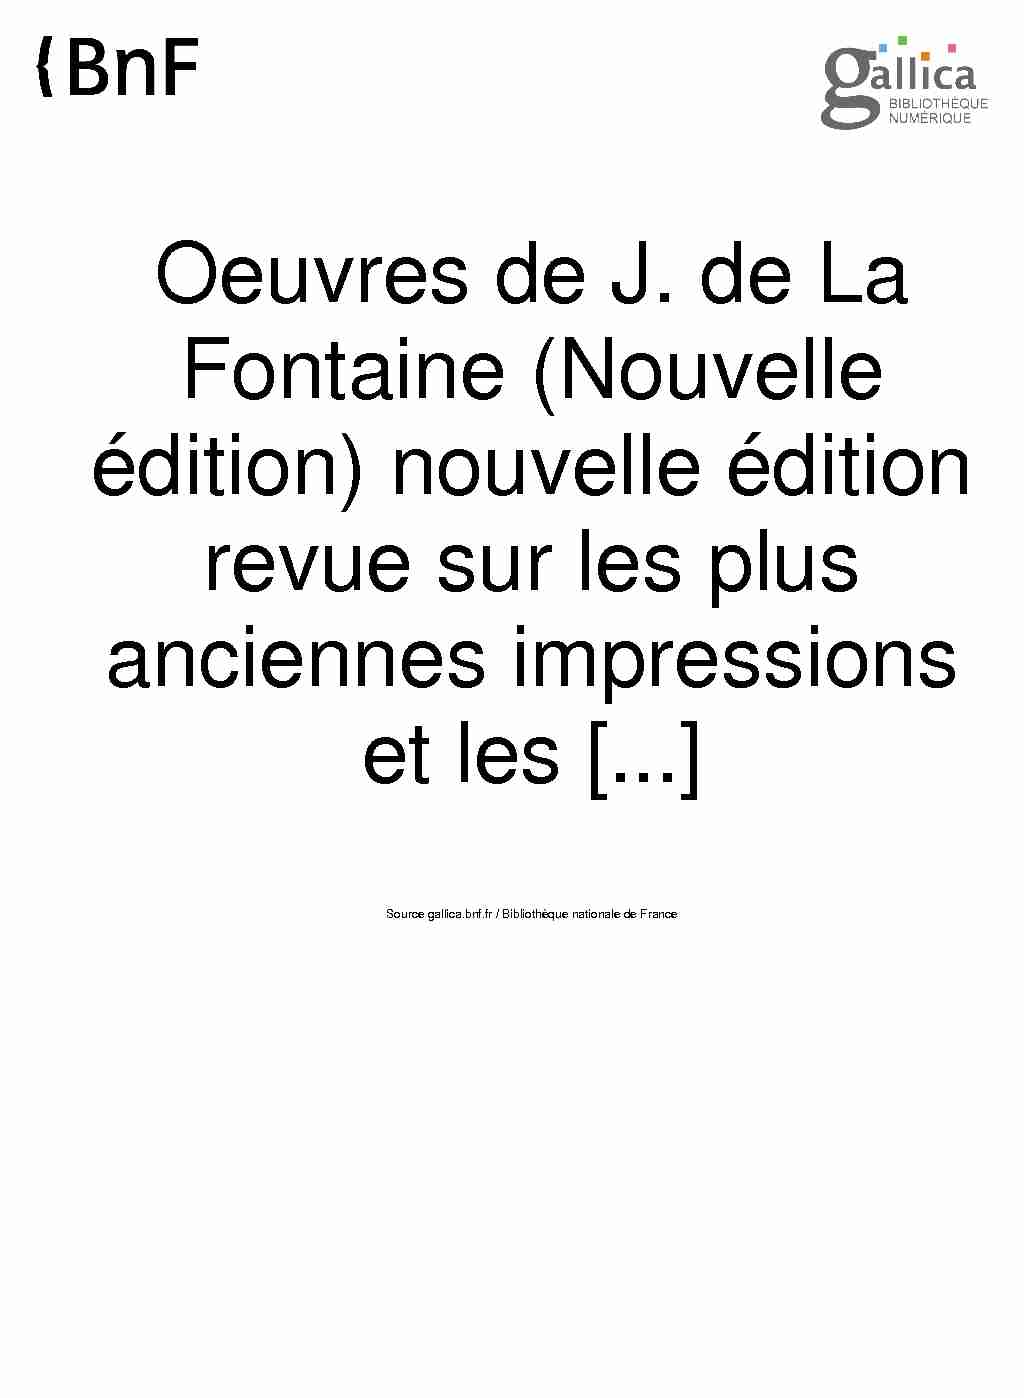 [PDF] Oeuvres de J de La Fontaine (Nouvelle édition) nouvelle édition